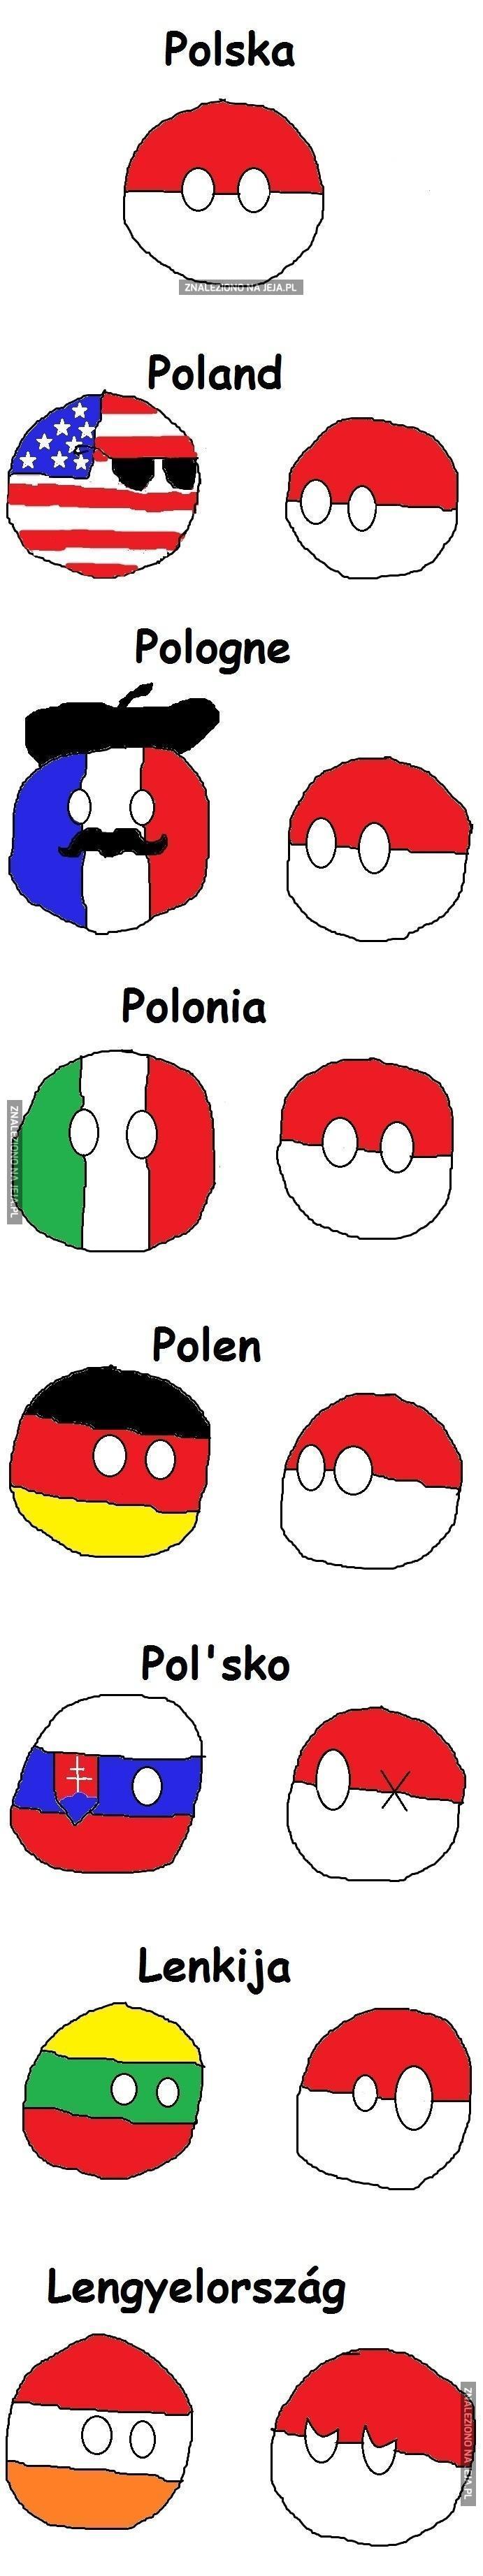 Polska w innych językach